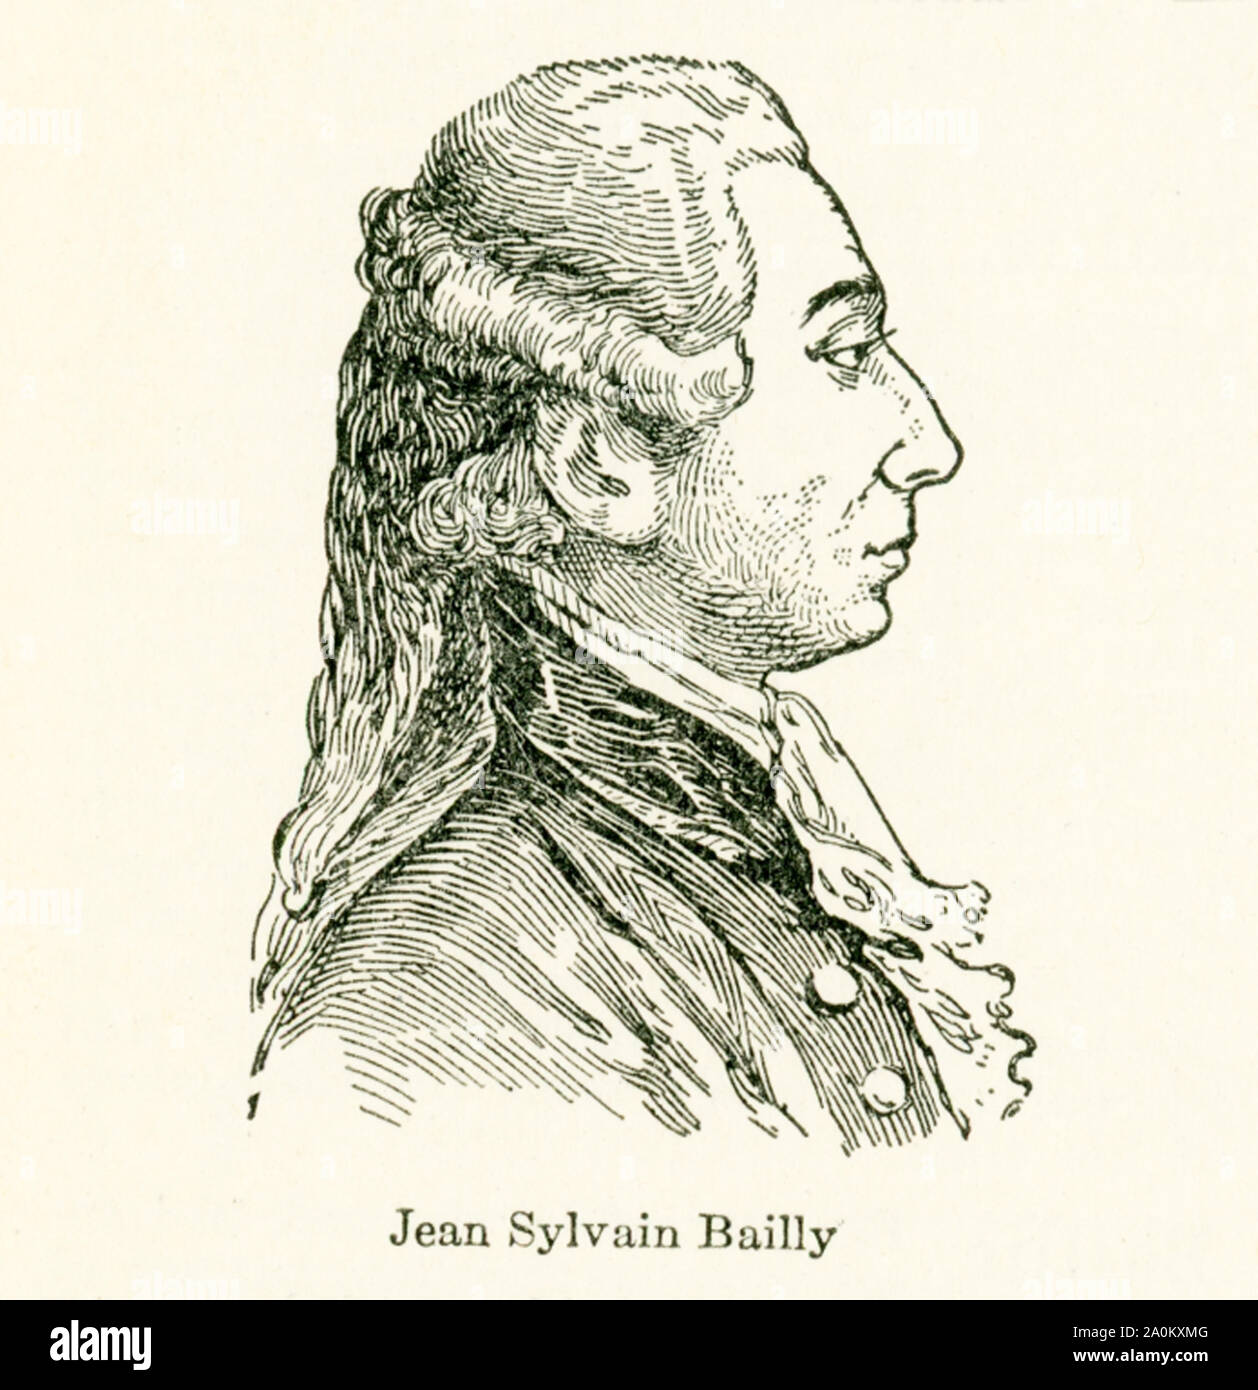 Diese Abbildung von Jean Sylvain Bailly (1736-1793) stammt aus den frühen 1920er Jahren. Jean Sylvain Bailly war ein französischer Astronom, Mathematiker, Freimaurer, und politische Führer der frühen Teil der Französischen Revolution. Er präsidiert die Tennis Court Oath, diente als der Bürgermeister von Paris von 1789 bis 1791, und wurde schließlich während der Herrschaft des Terrors durch die Guillotine hingerichtet. Stockfoto